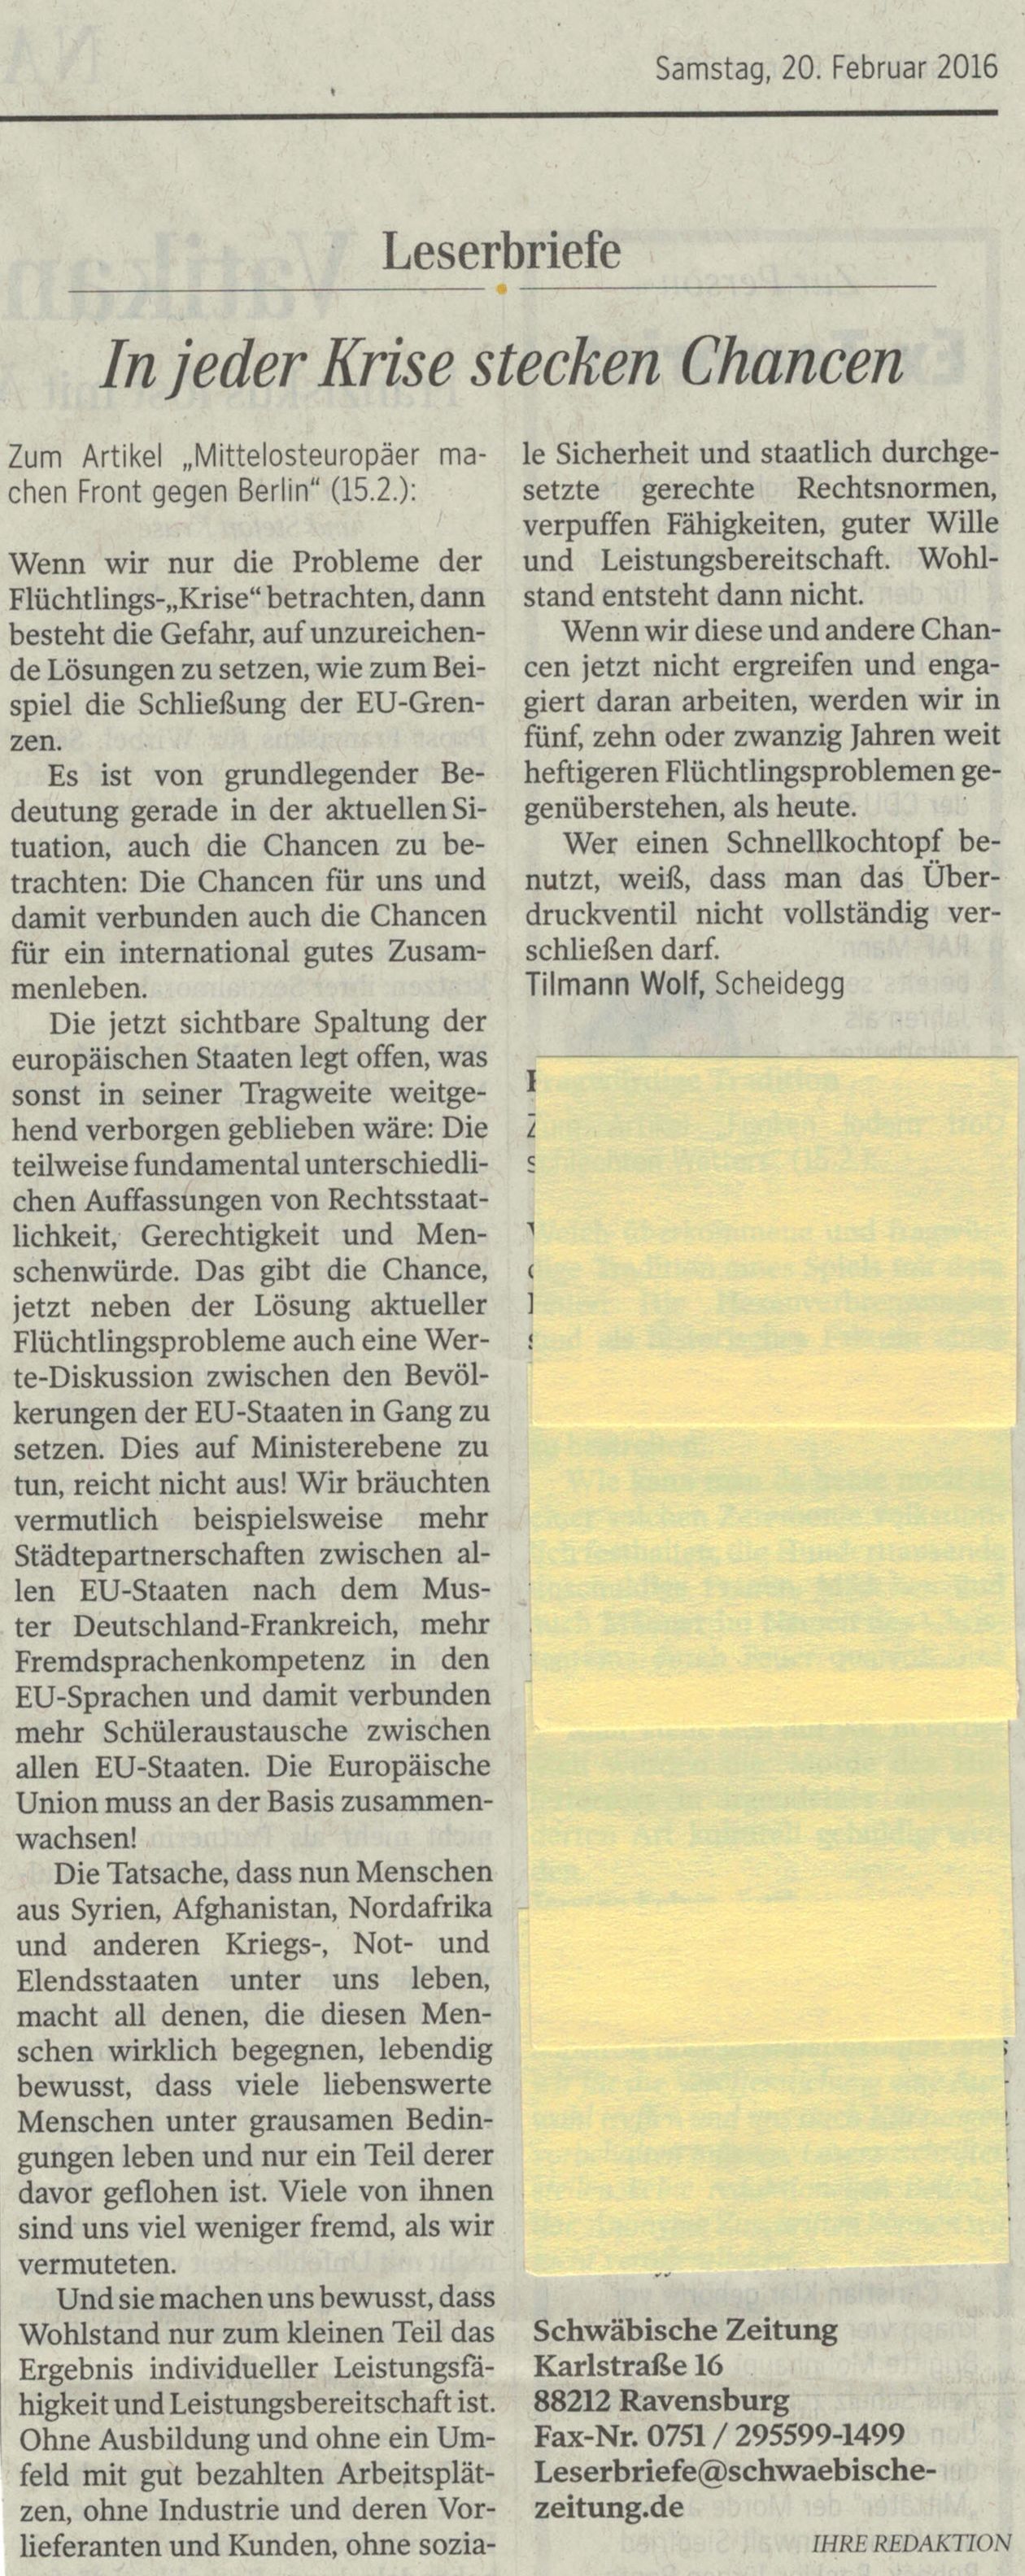 Schwäbische Zeitung - Leserbrief